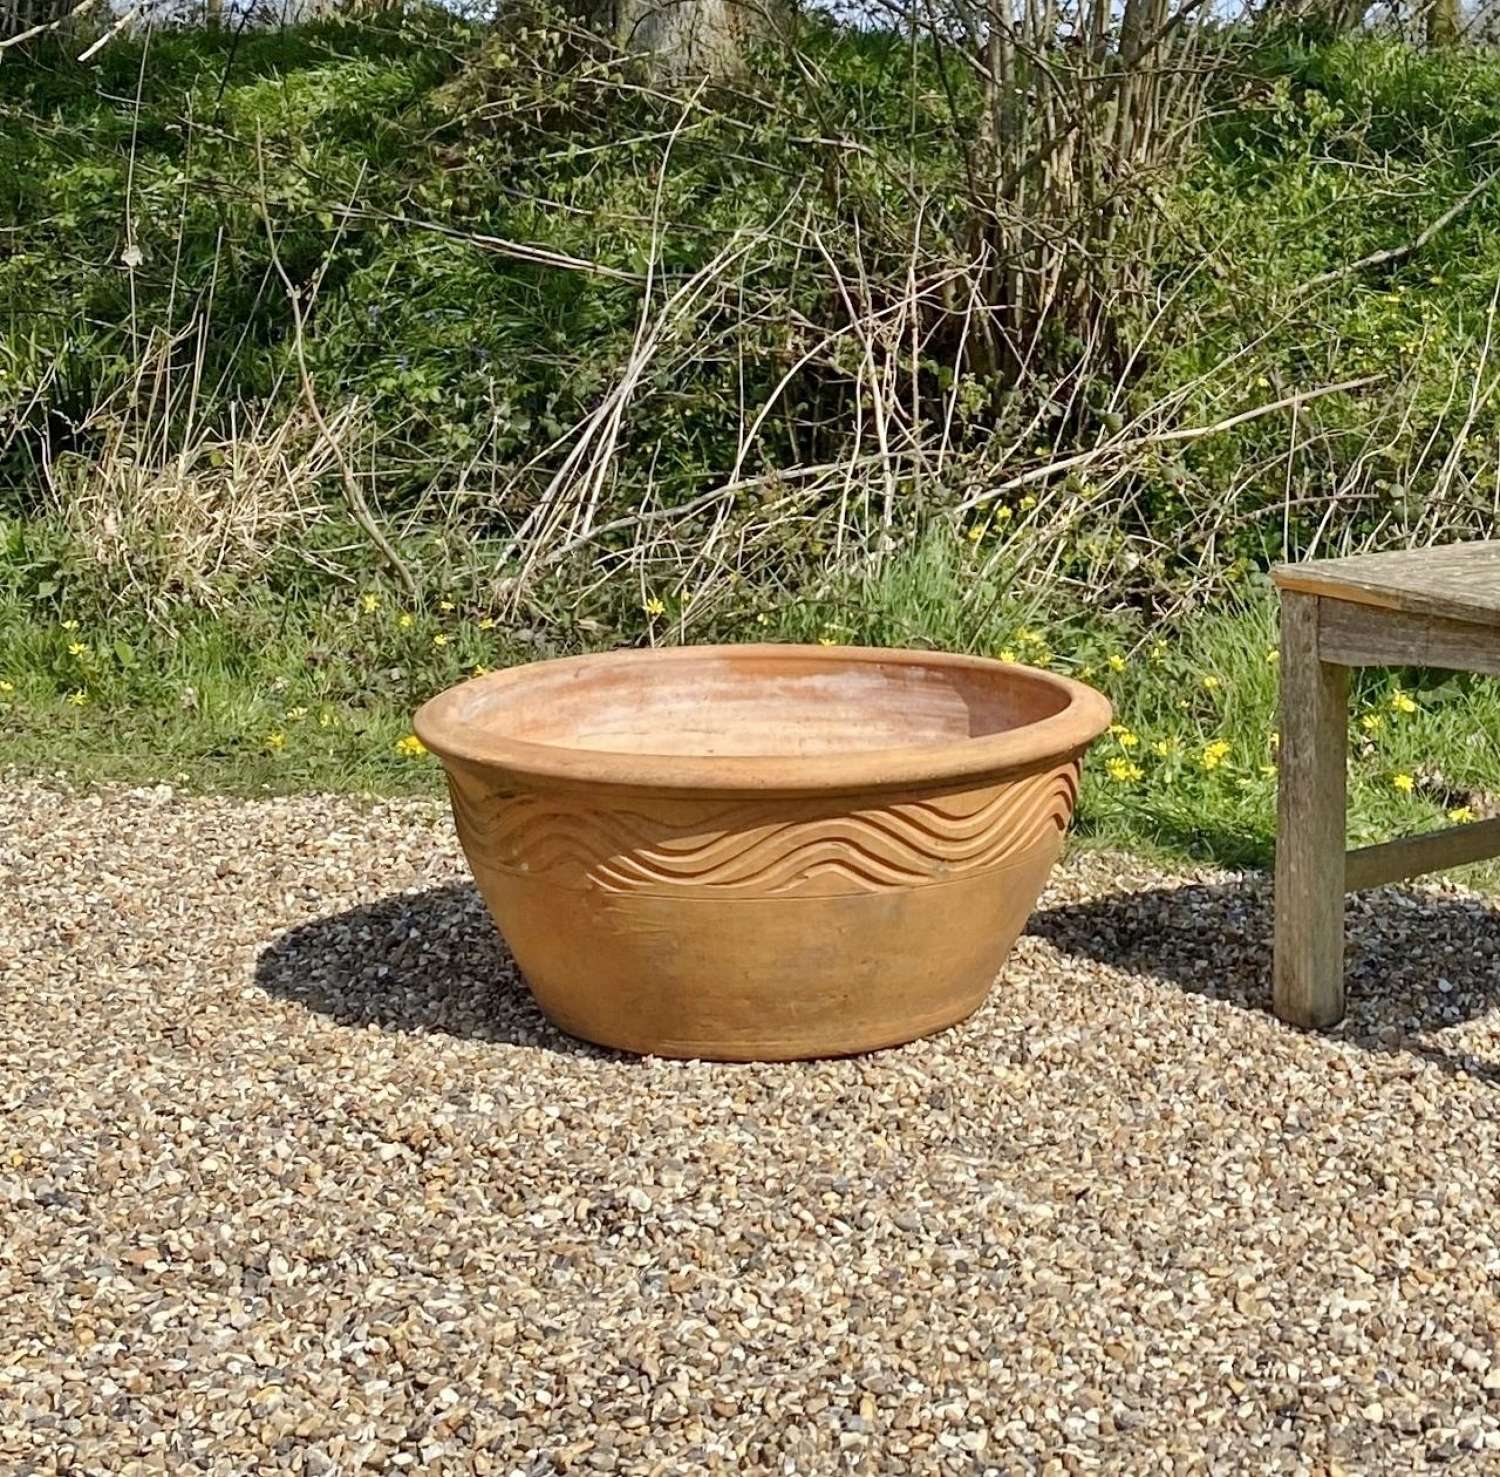 Terracotta Bowl